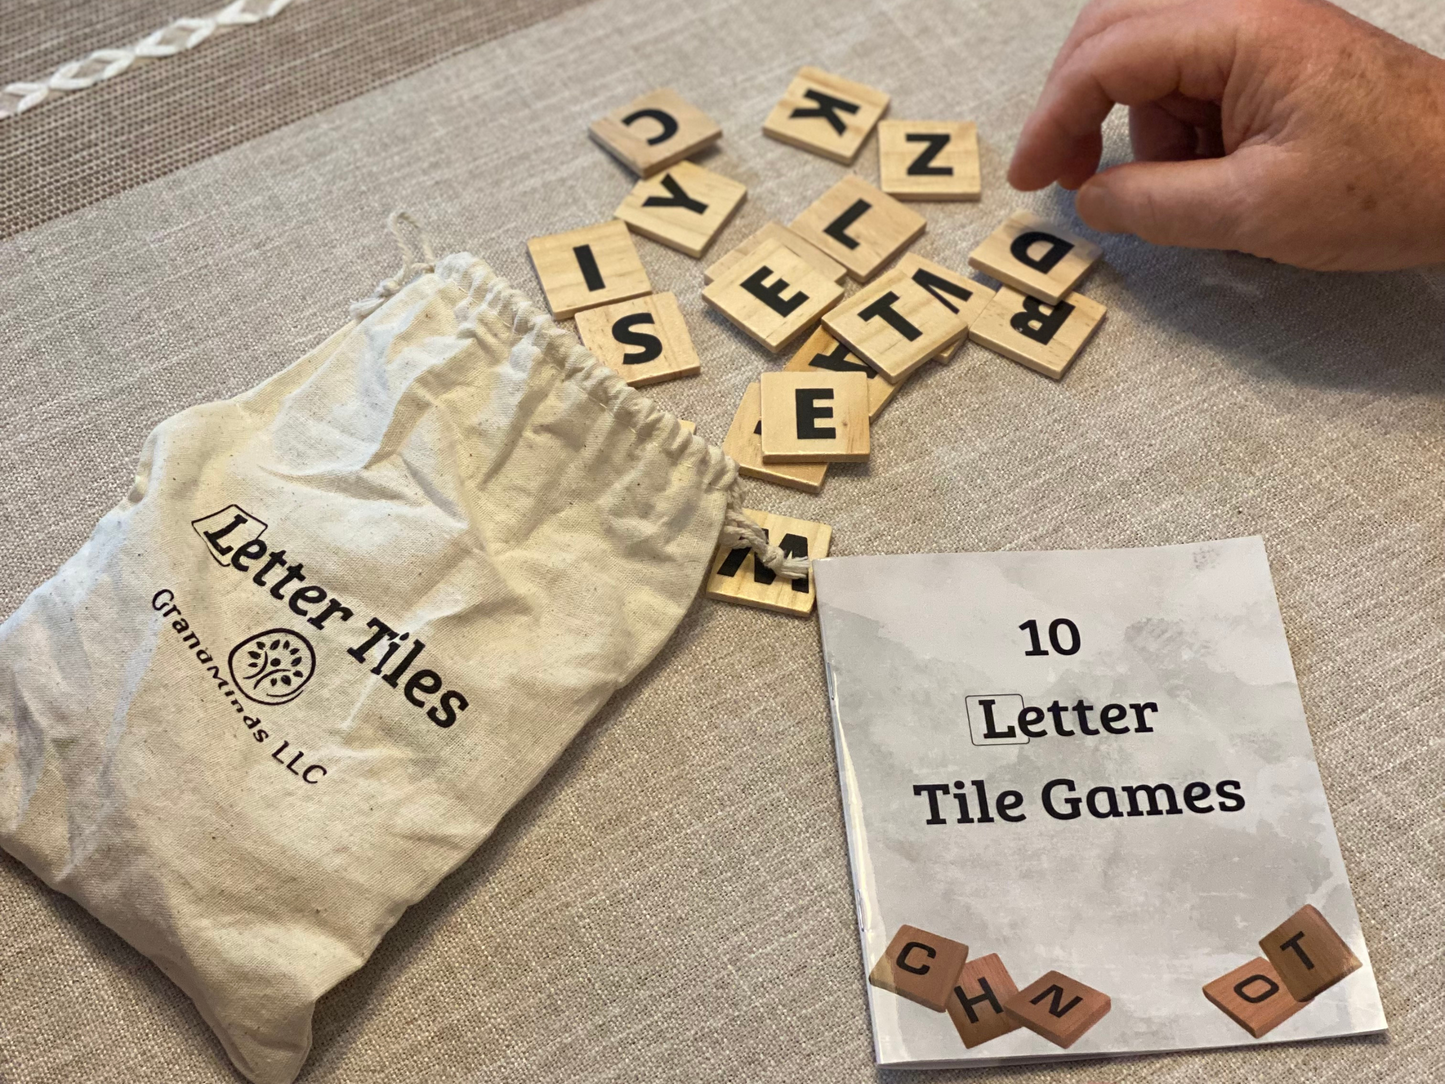 Letter Tiles